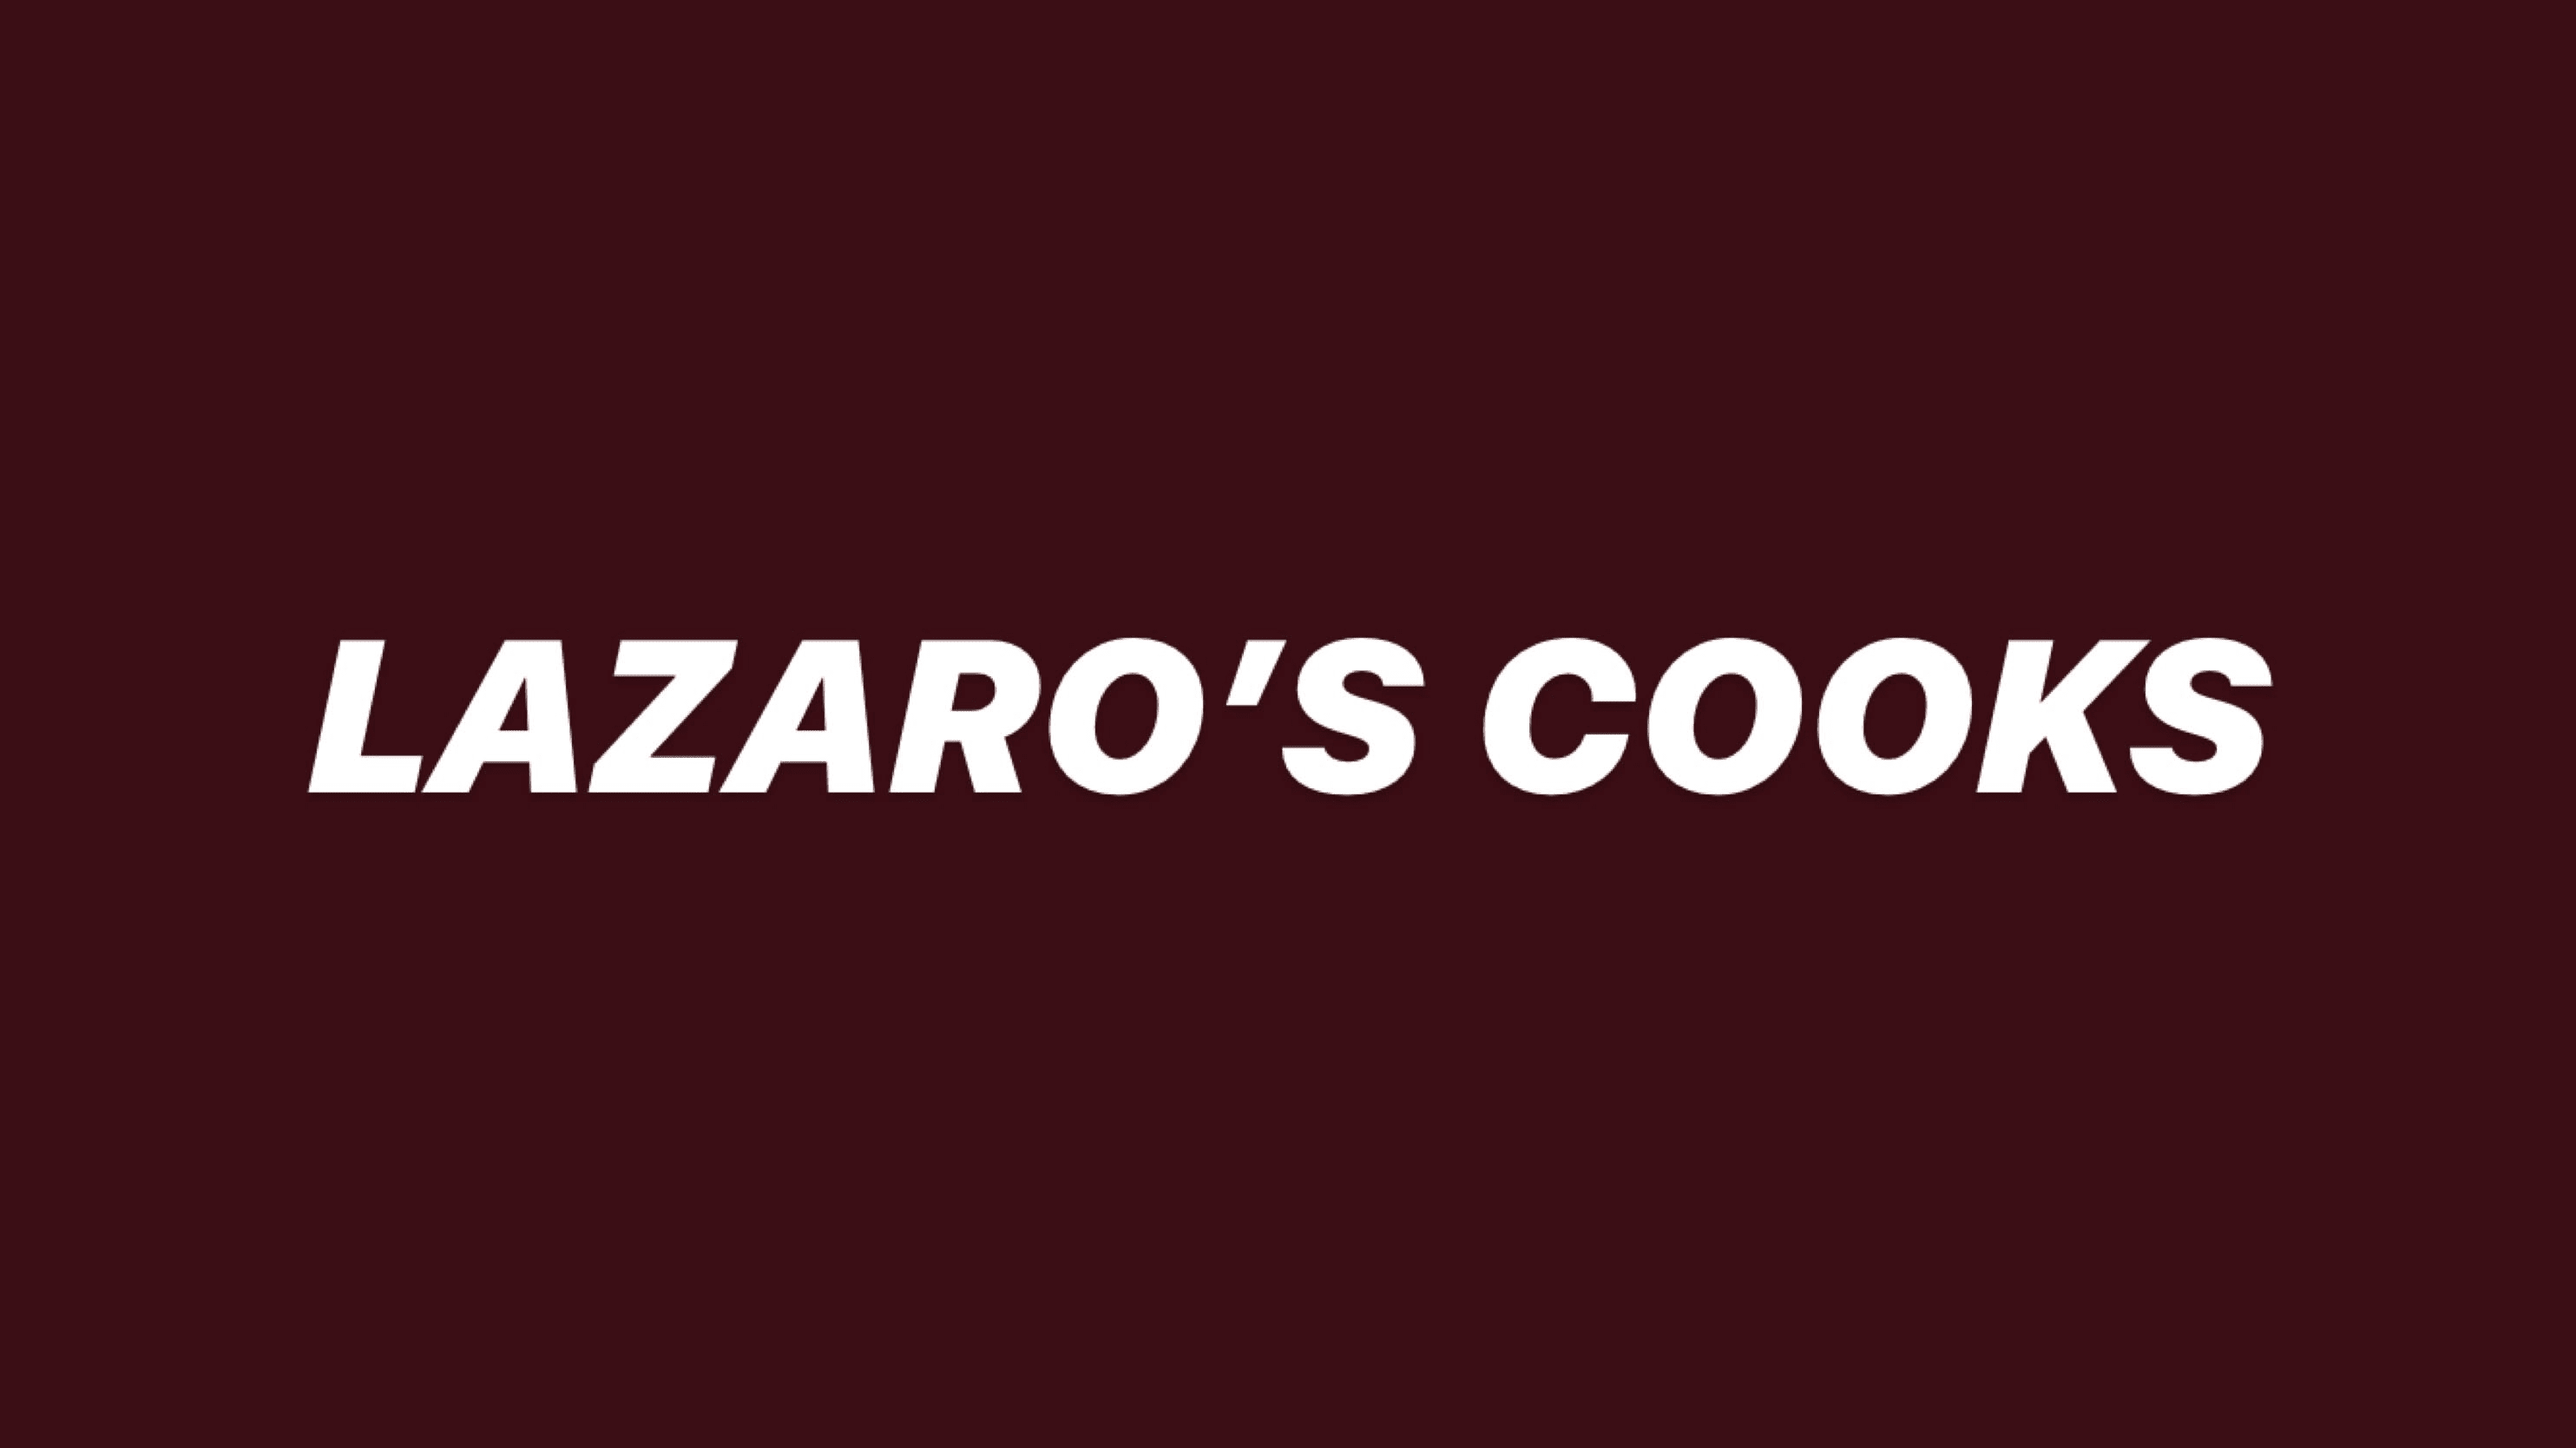 Lazaro’s cooks